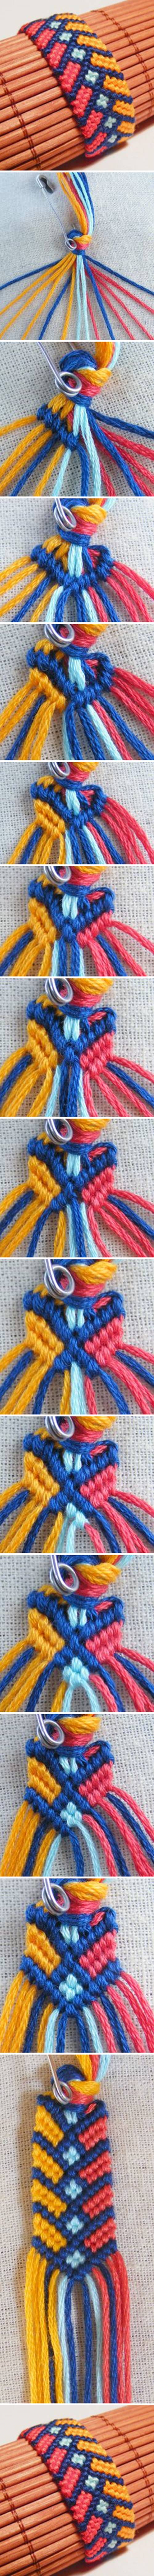 DIY Stylish Square Knot Macrame Bracelet